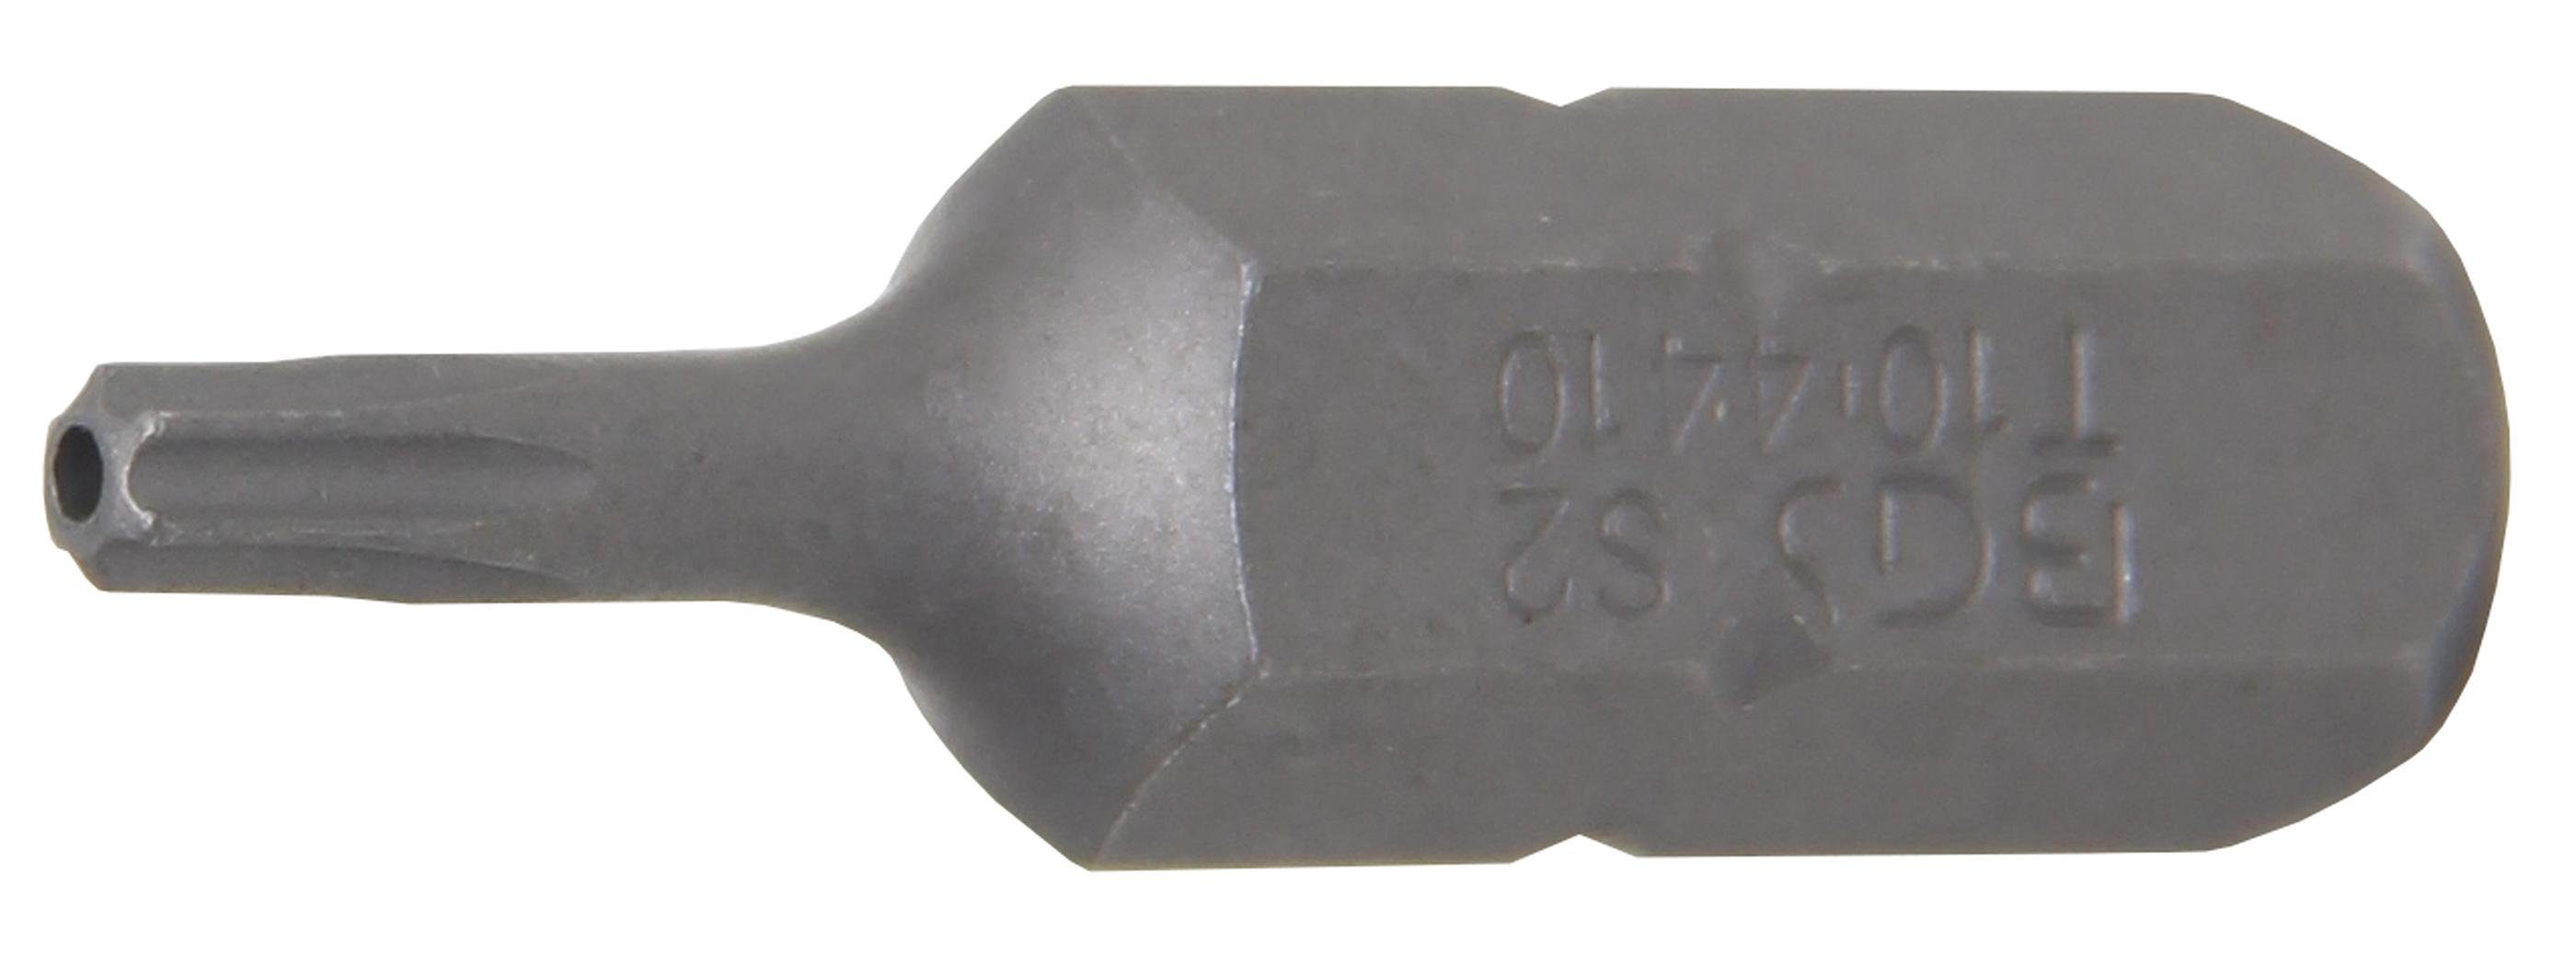 Länge Bit-Schraubendreher Torx) mm technic (5/16), Bit, mit Bohrung 30 BGS mm, Außensechskant T10 T-Profil (für Antrieb 8